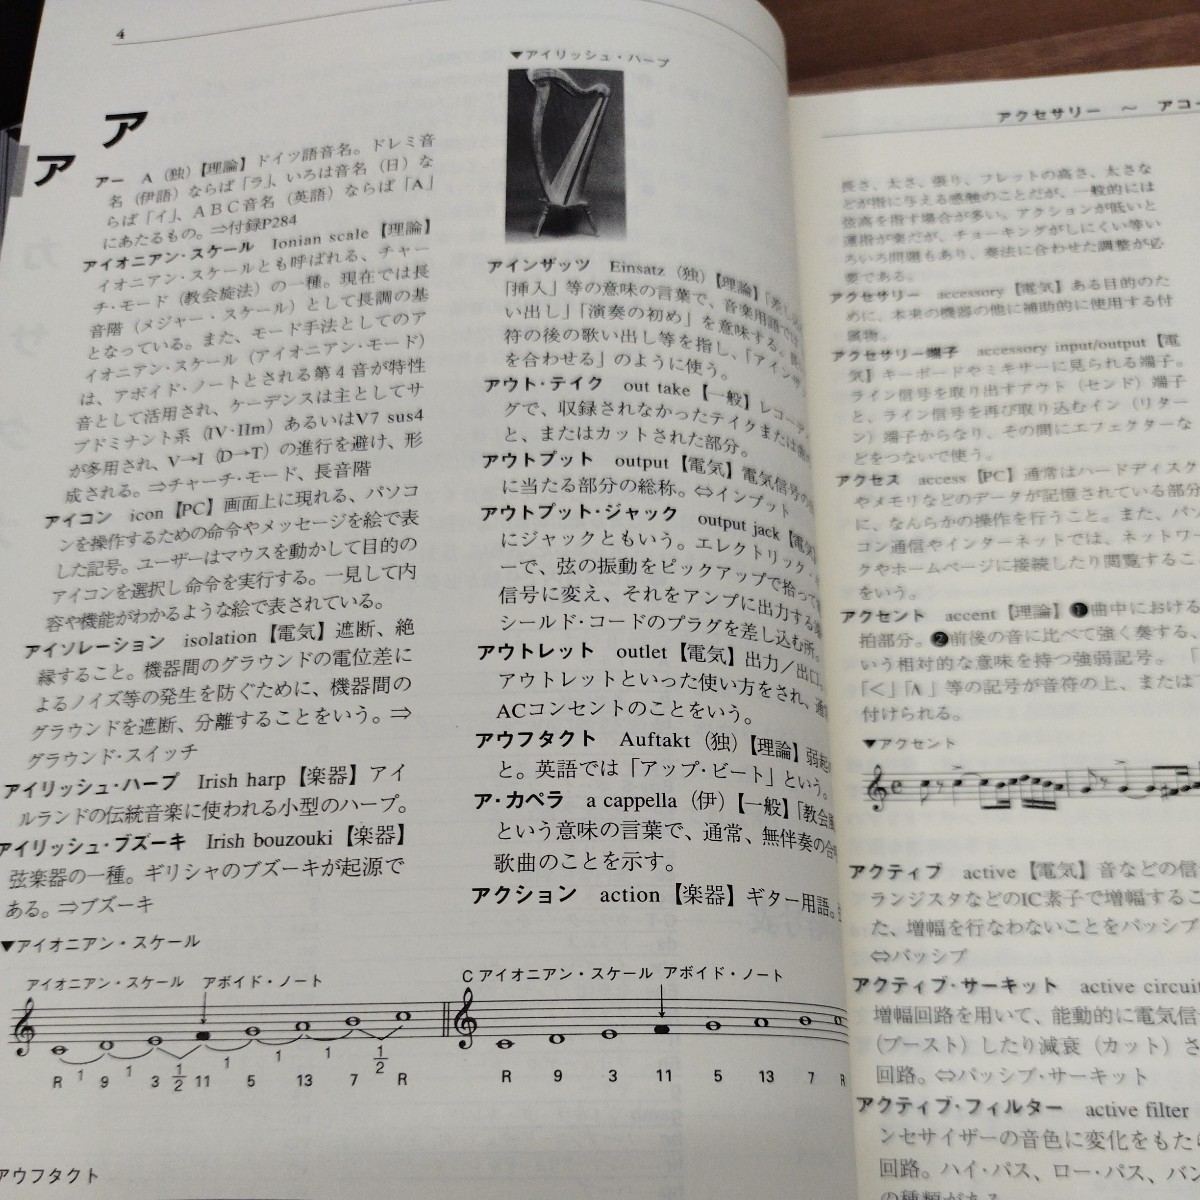  практическое использование музыка словарь 2000 год выпуск 